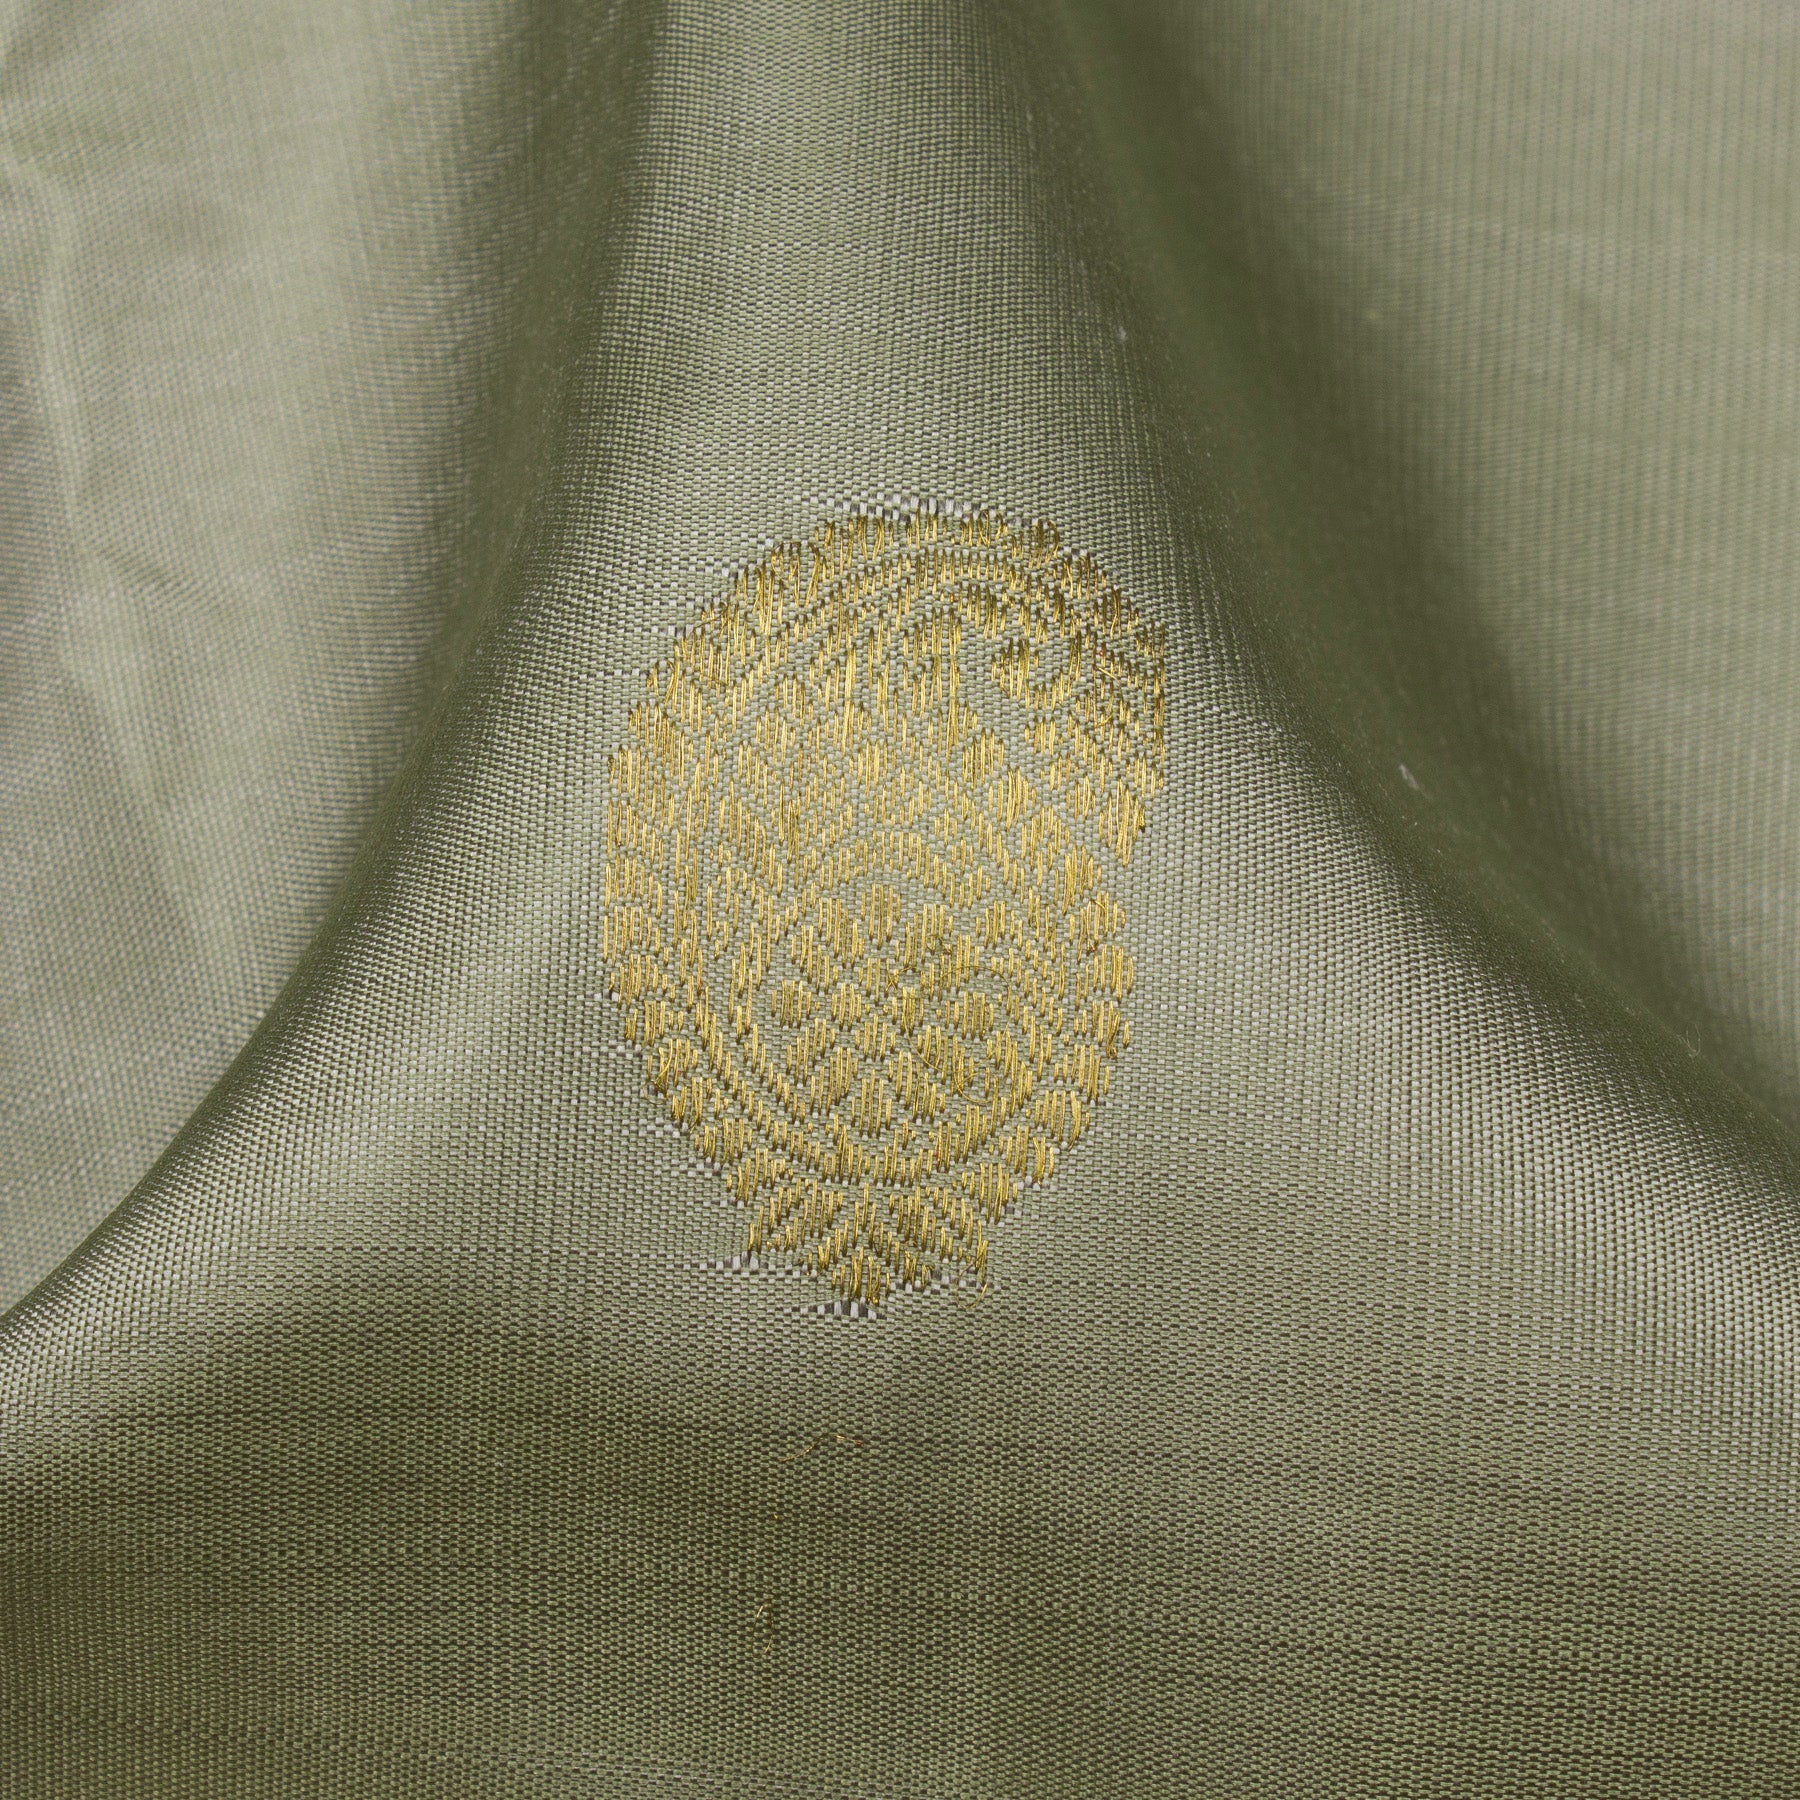 Kanakavalli Kanjivaram Silk Sari 23-040-HS001-14545 - Fabric View